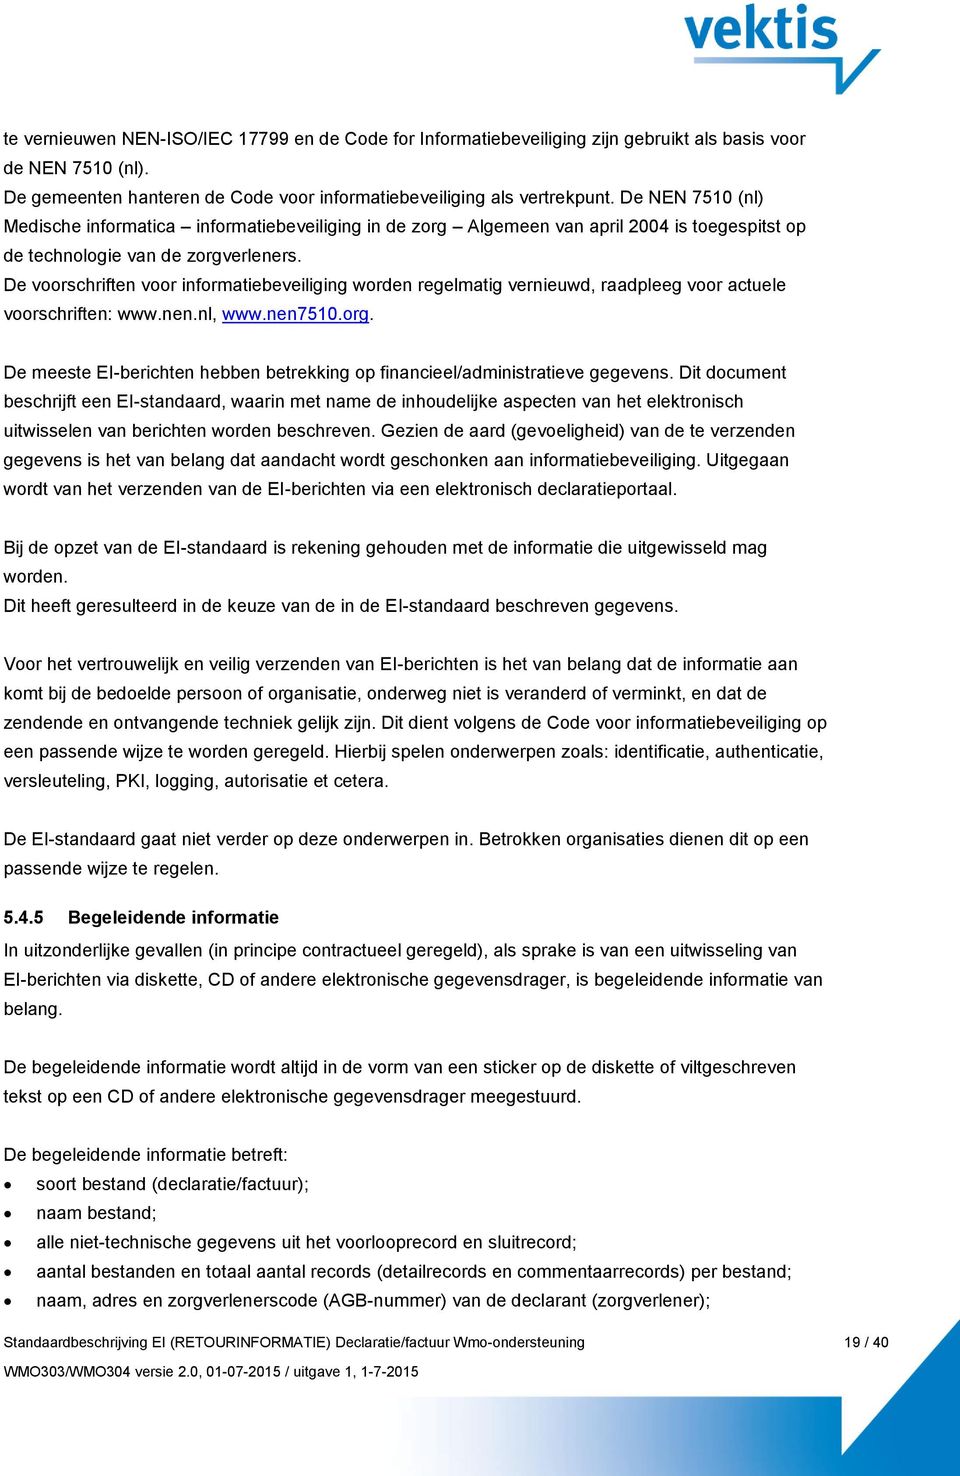 De voorschriften voor informatiebeveiliging worden regelmatig vernieuwd, raadpleeg voor actuele voorschriften: www.nen.nl, www.nen7510.org.